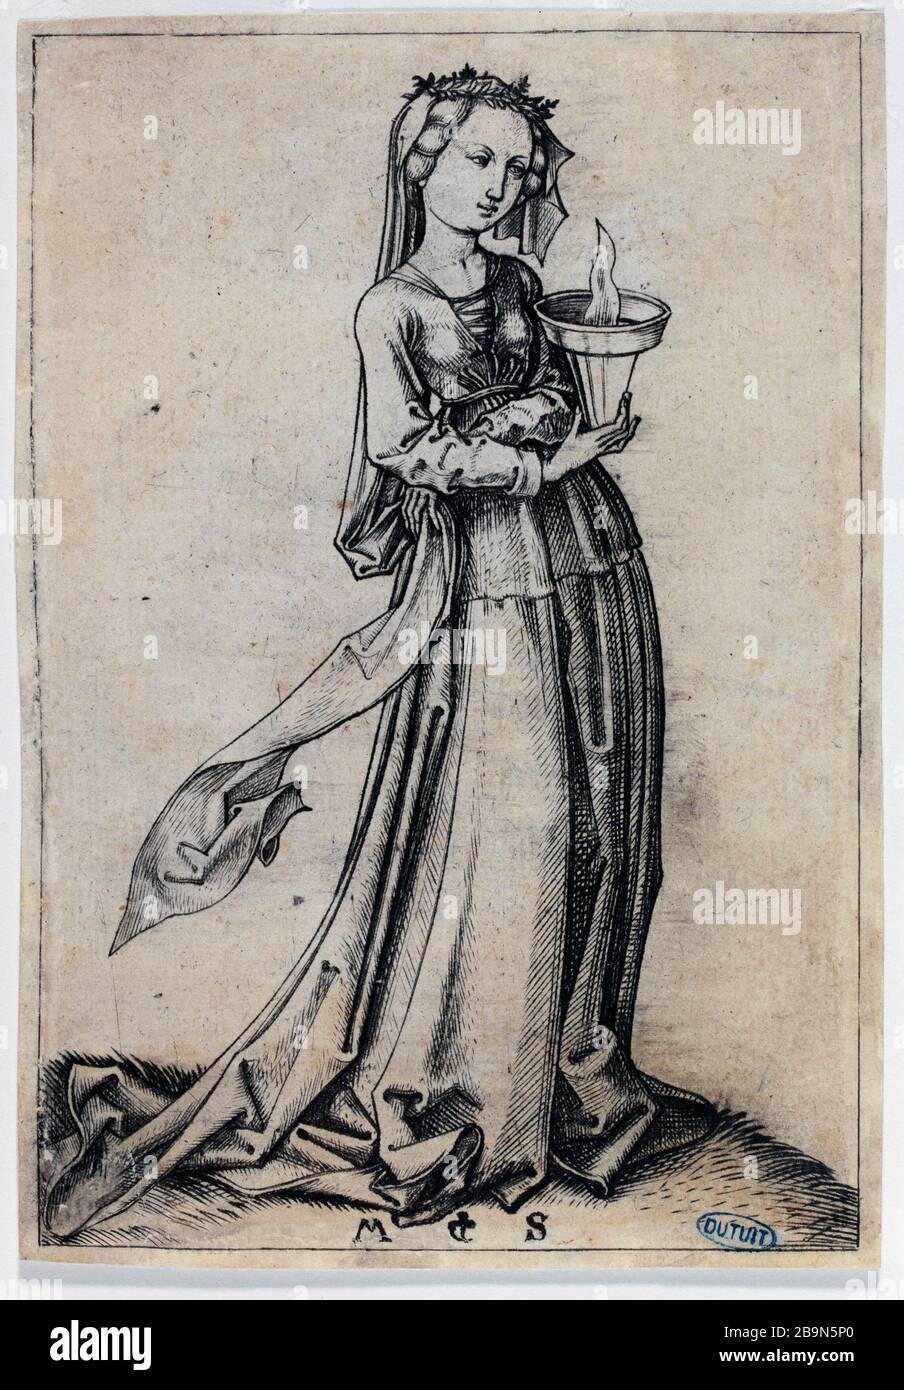 VIRGIN SAGE Martin Schongauer (1450-1491). "Vierge sage". Gravure. Musée des Beaux-Arts de le ville de Paris, Petit Palais. Stock Photo